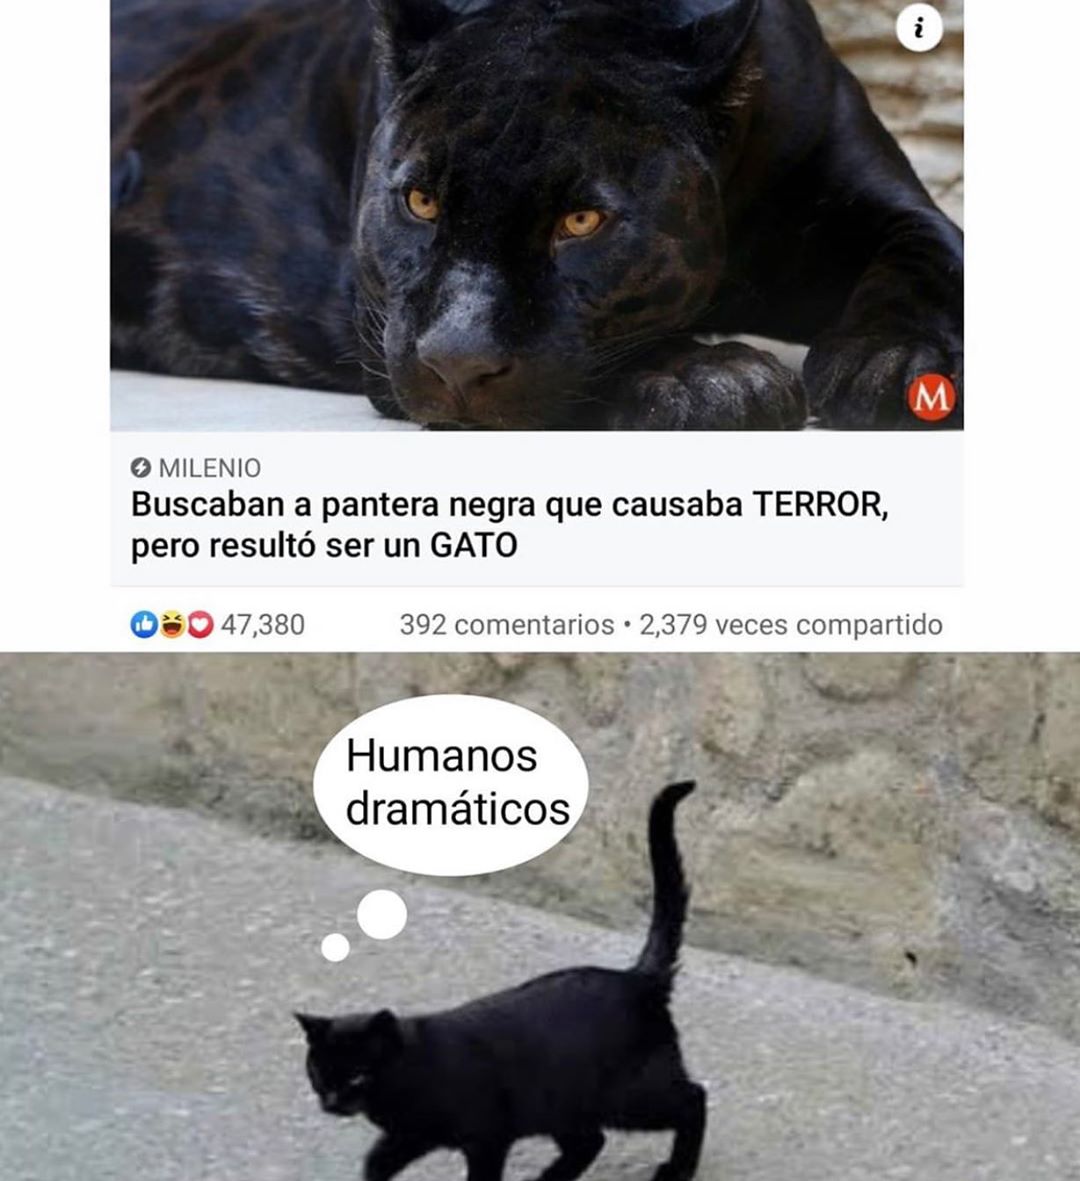 Buscaban a pantera negra que causaba terror, pero resultó ser un gato.  Humanos dramáticos.